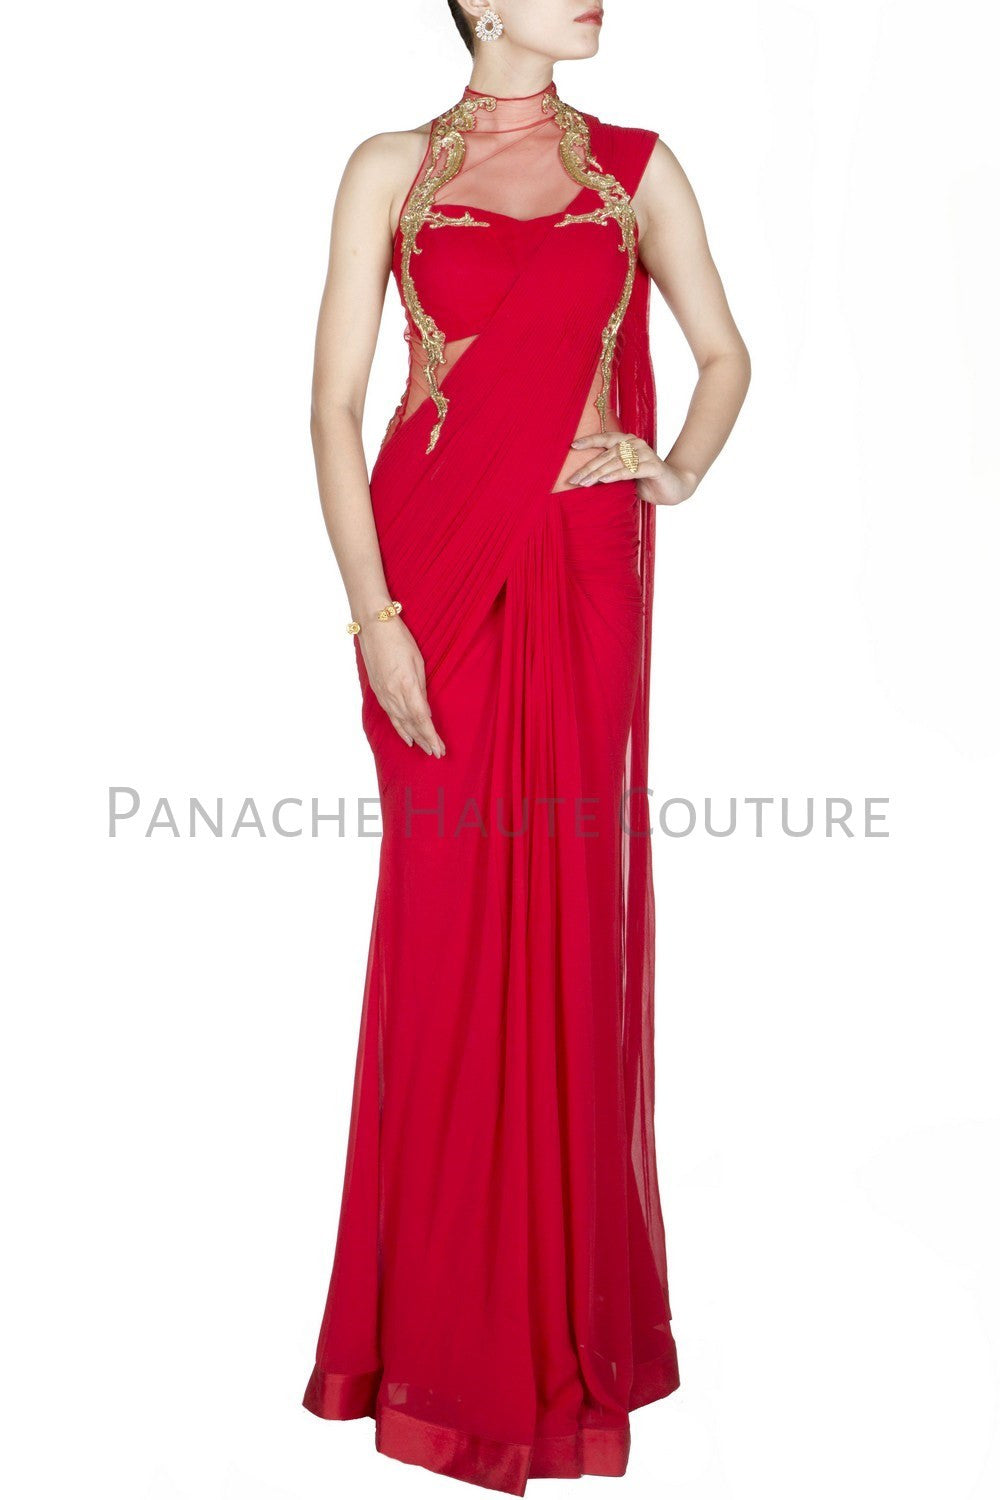 20 Gorgeous Pics of Saree Gown Designs | Saree gown, Stylish sarees, Saree  dress